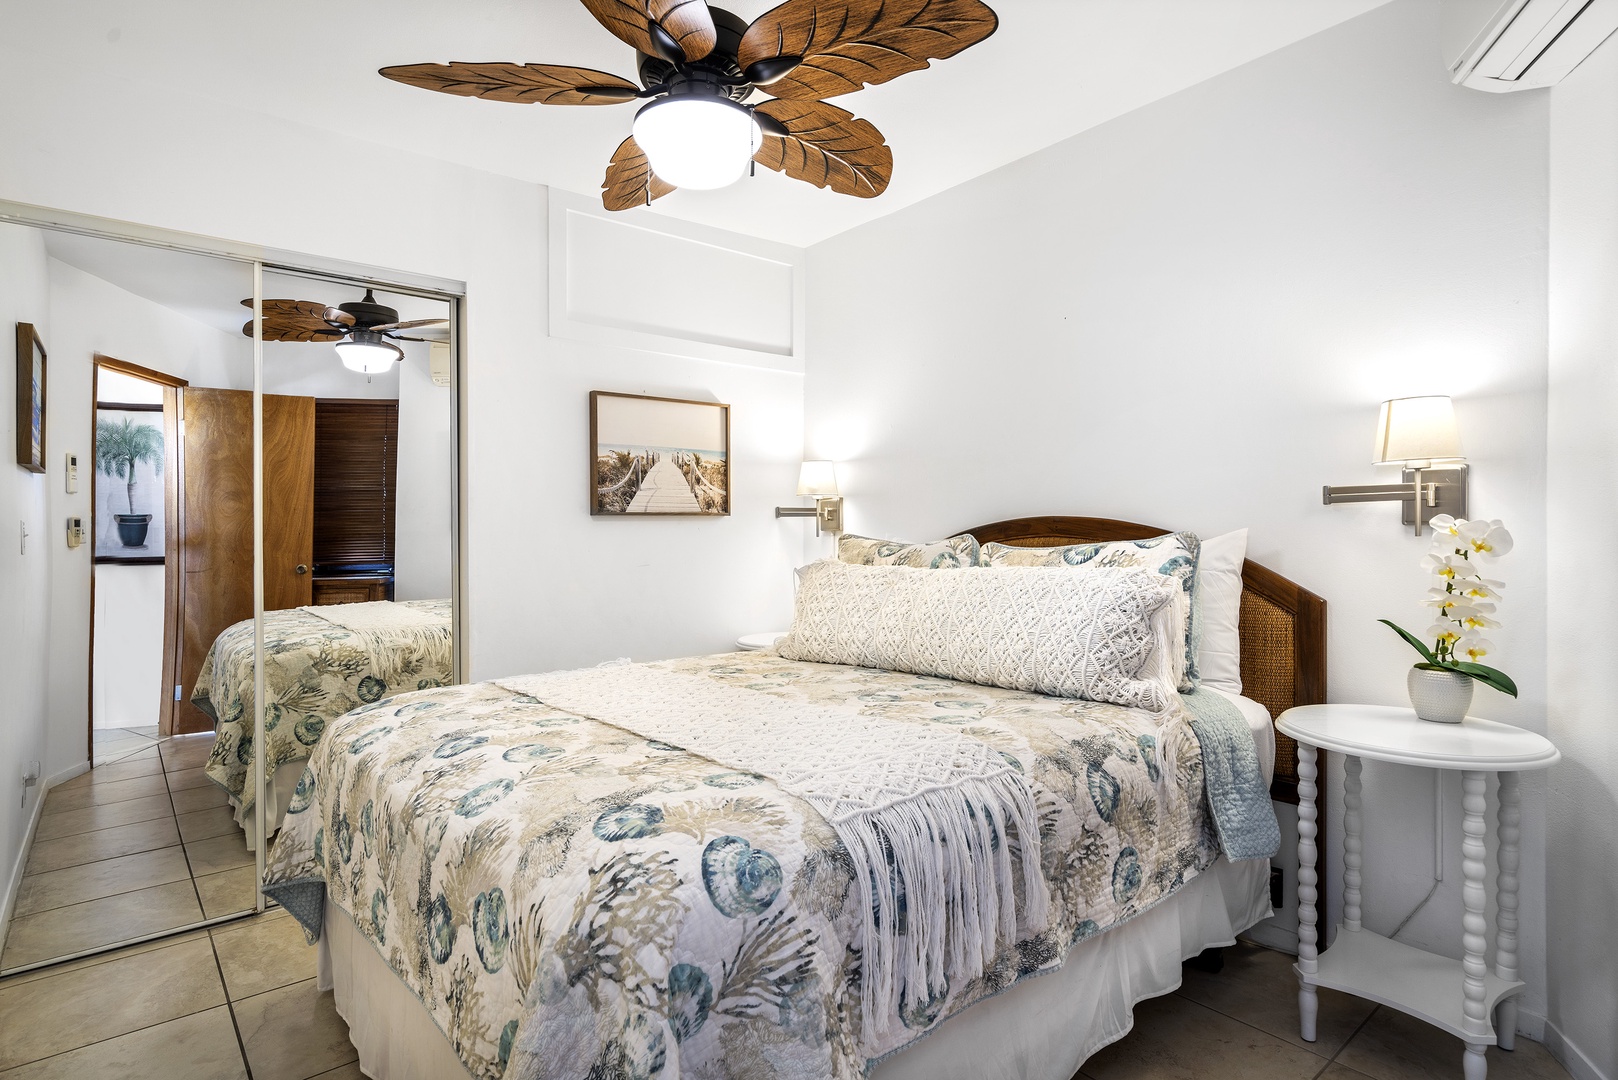 Kailua Kona Vacation Rentals, Kona's Shangri La - Third floor guest bedroom with Queen bed & A/C